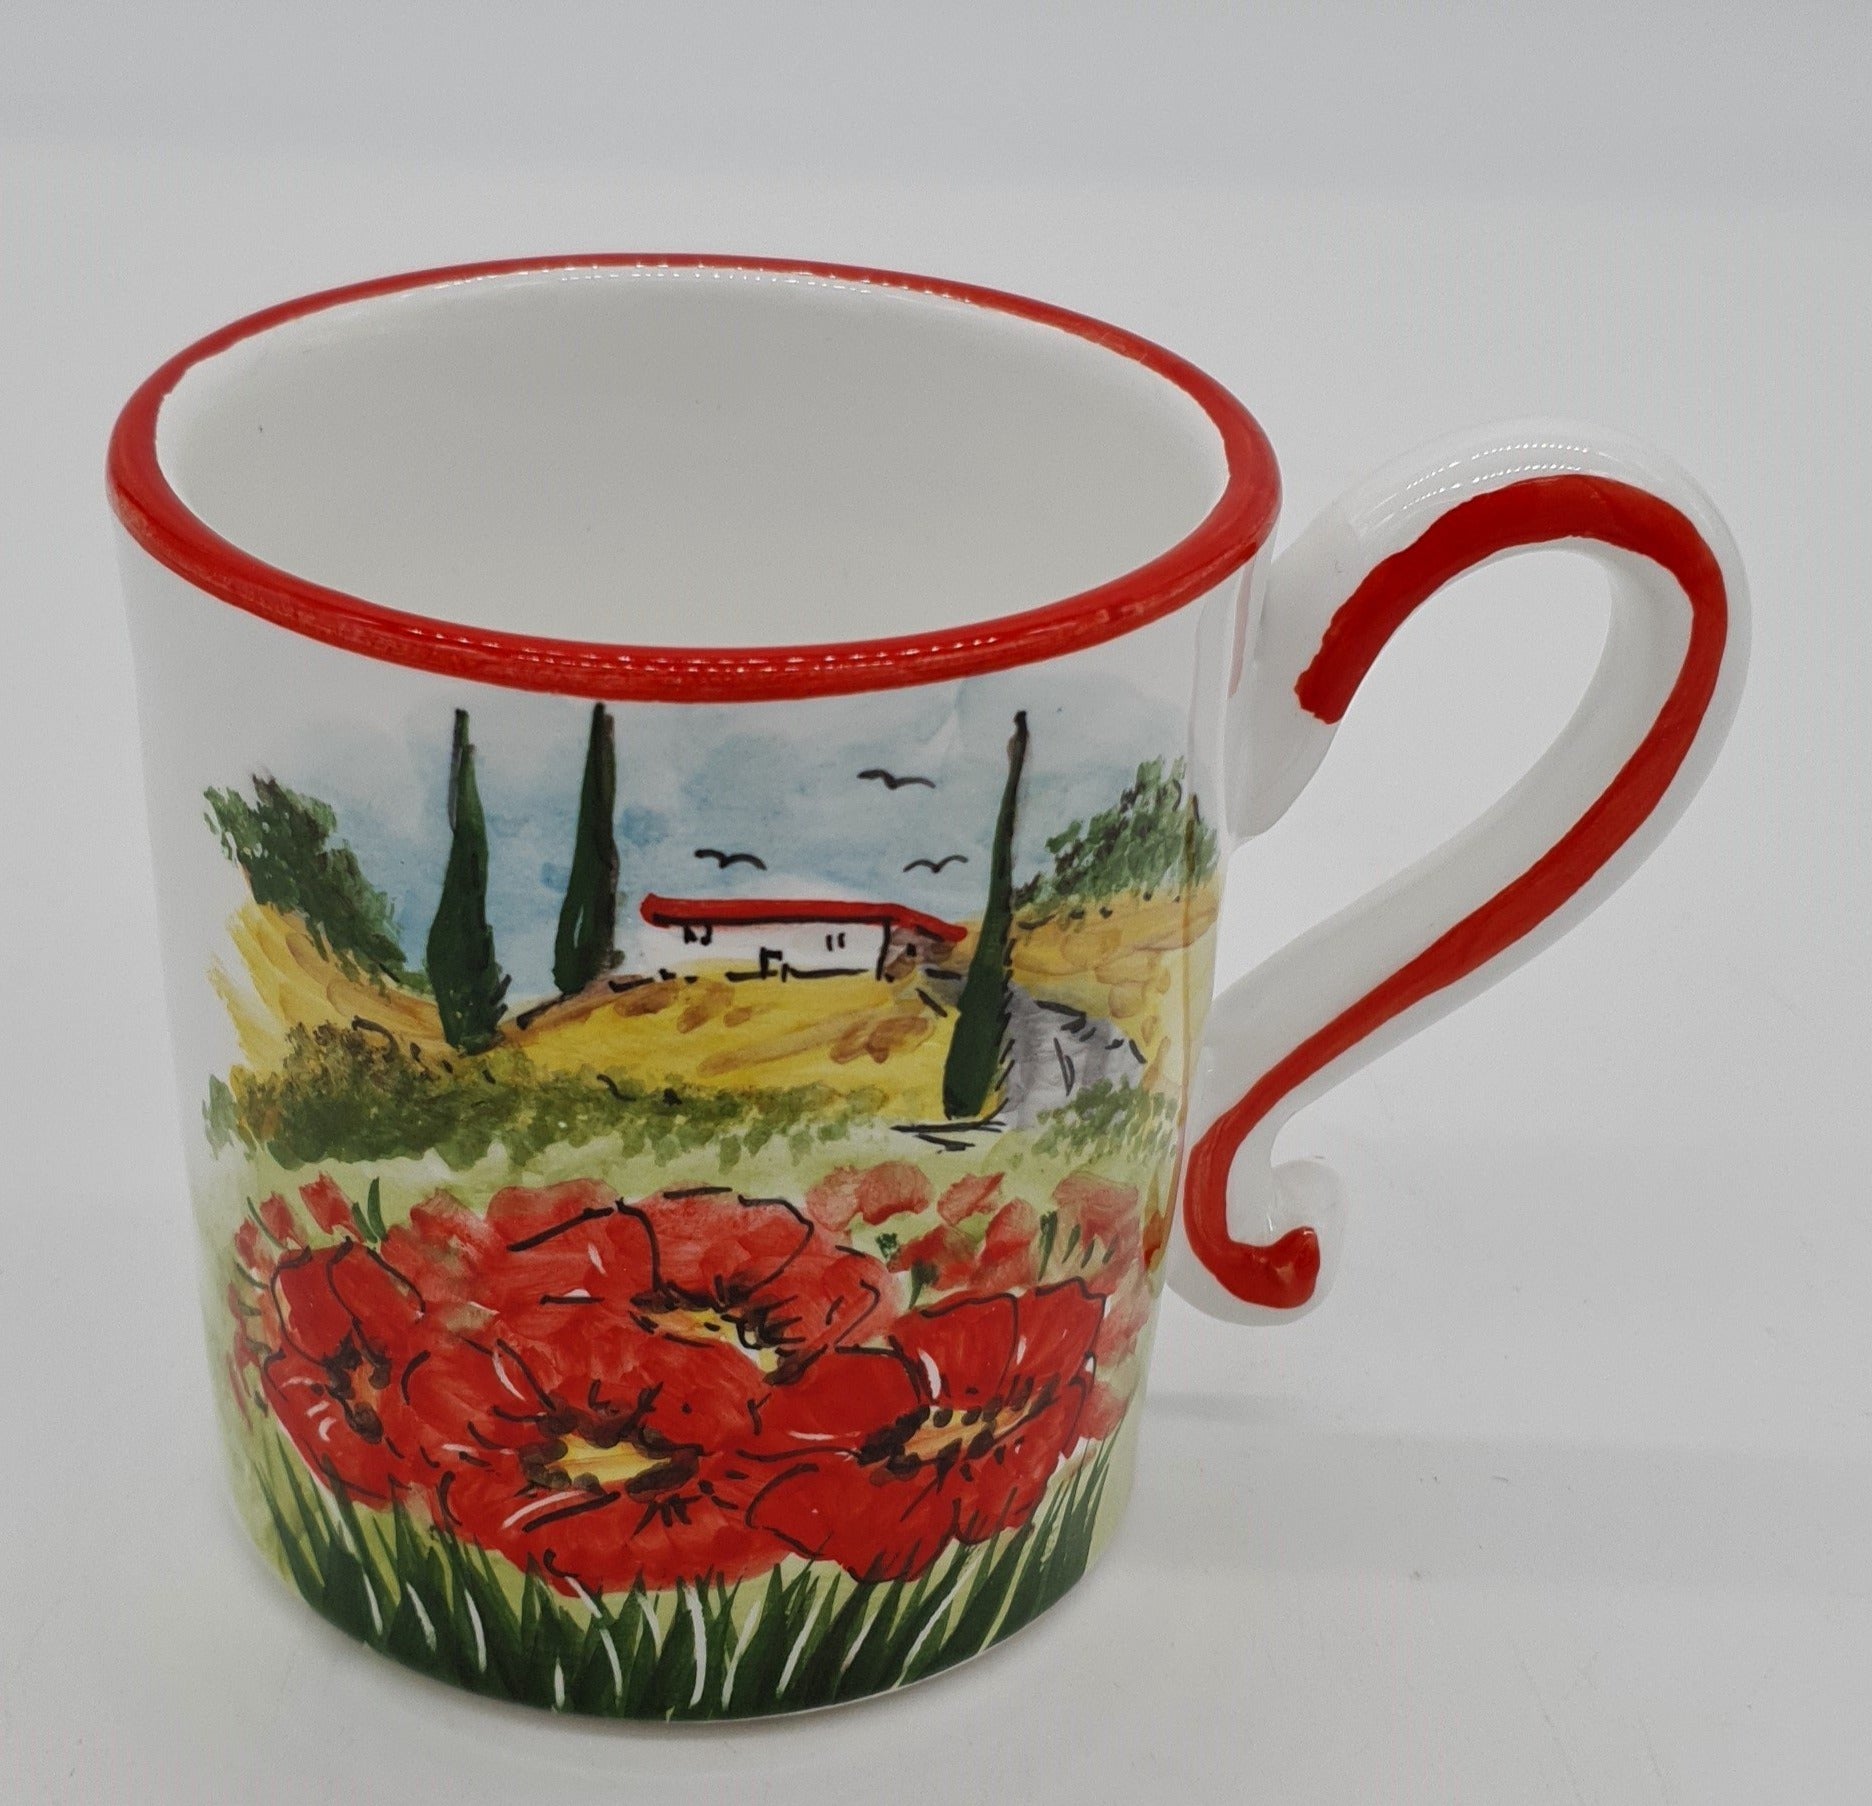 Mug with Tuscan poppies